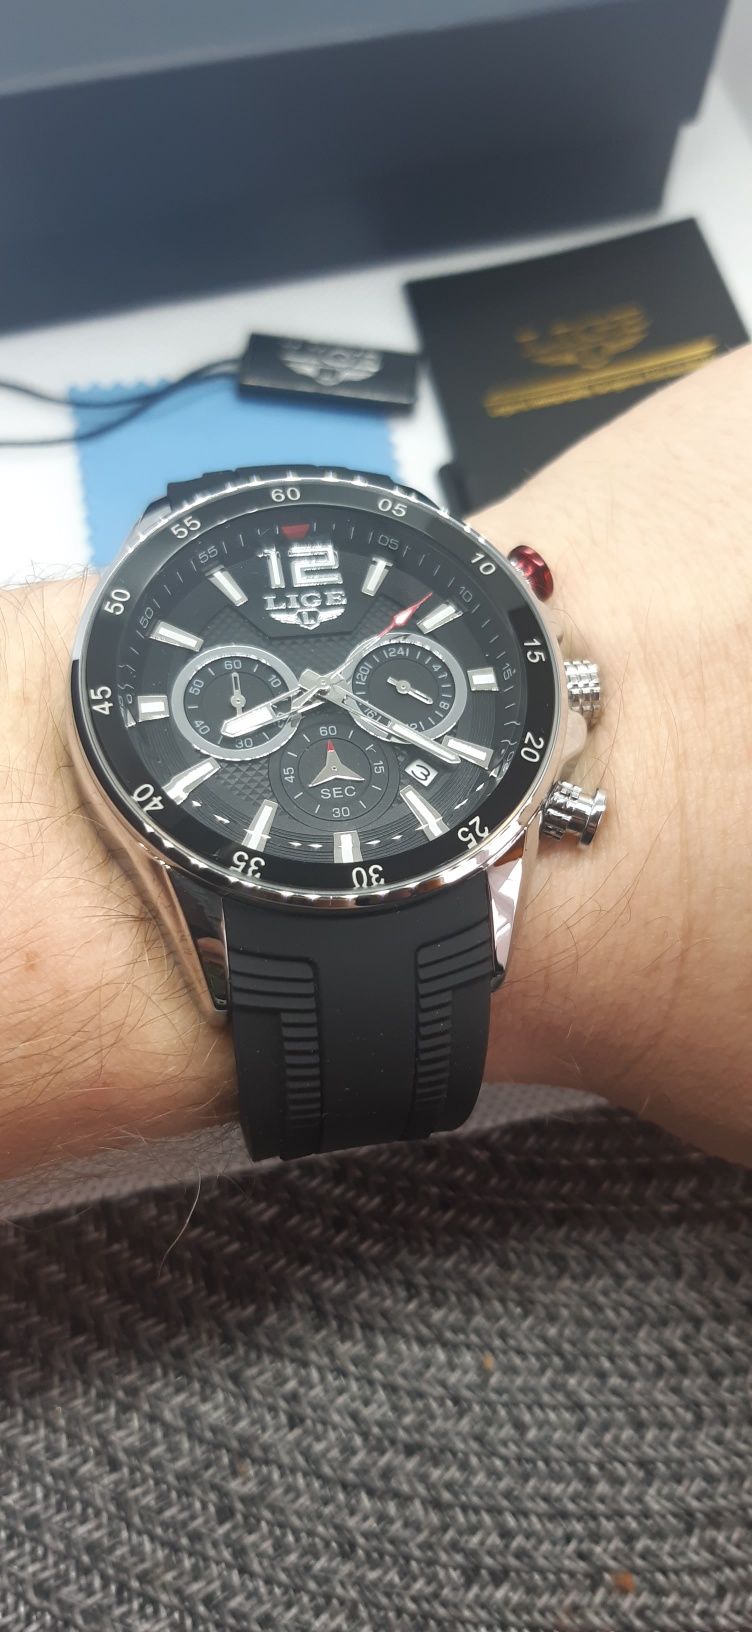 Zegarek na pasku silikonowym, LIGE sportowy z chronografem